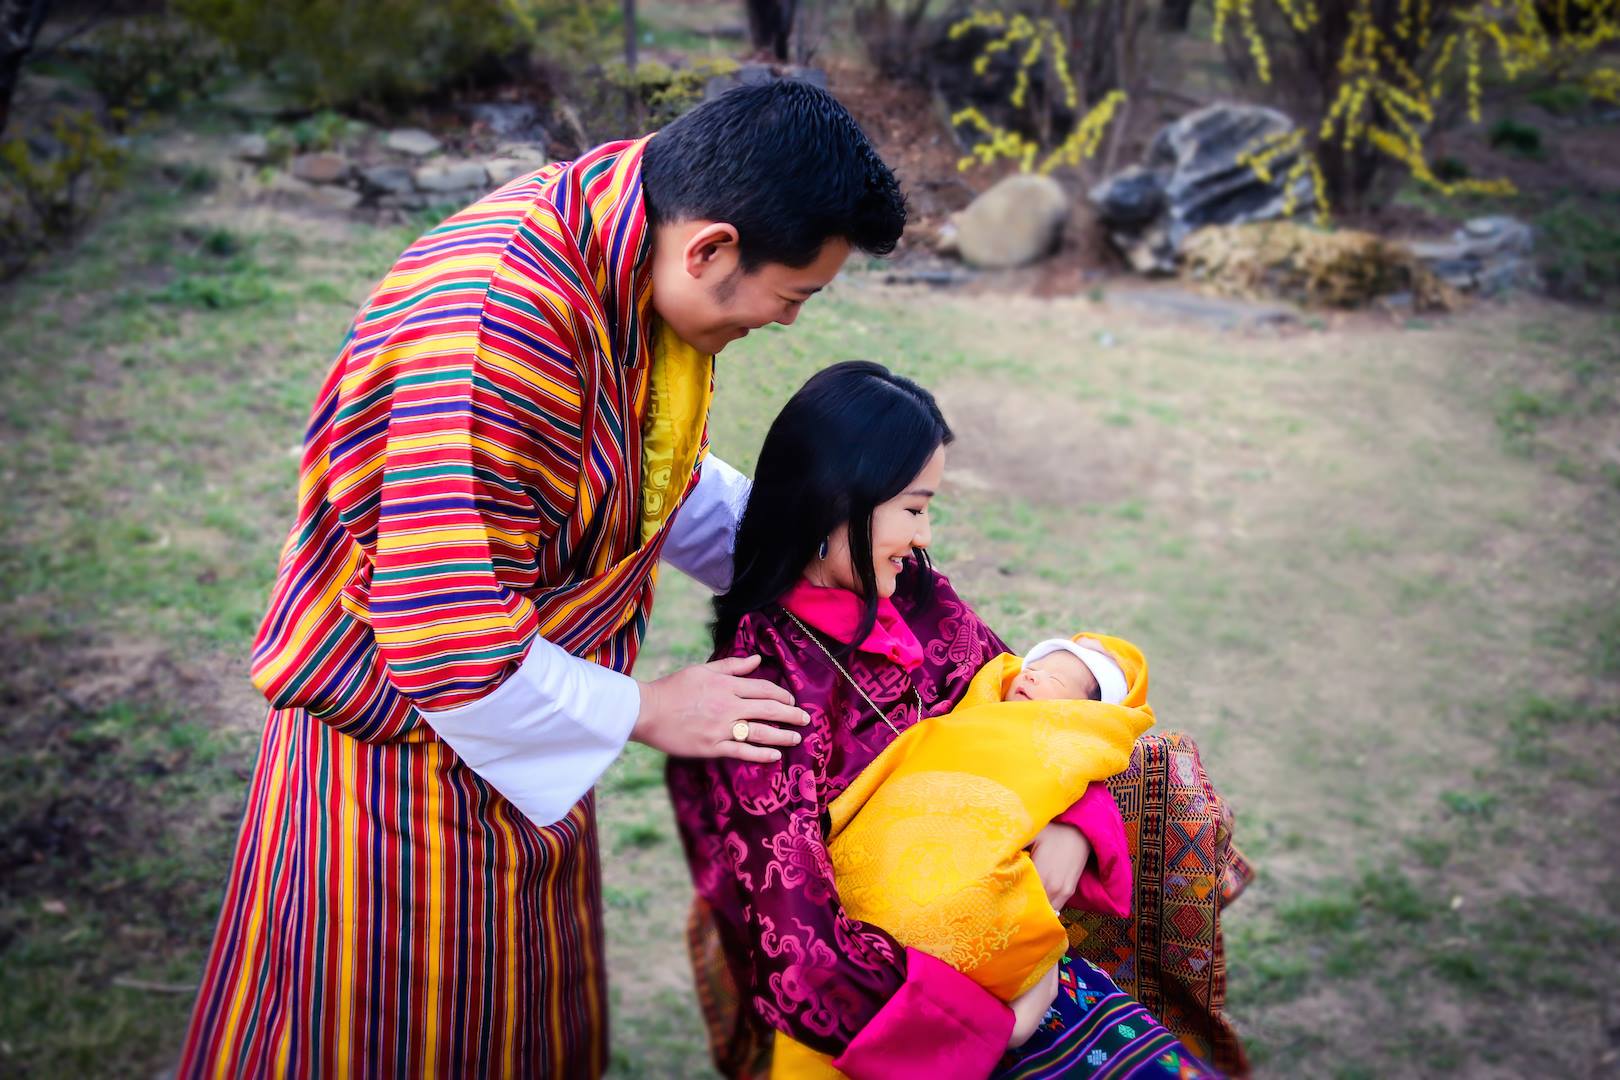 Sigar Rrefecture 2月5日幸せの国ブータンのジグメ ケサル ナムゲル ワンチュク国王とジェツン ペマ王妃にロイヤルベビーが誕生されました 国王夫妻は11年に結婚後日本を訪問されました Royal Baby Birth In Bhutan T Co Vvdp4rpqnh Twitter